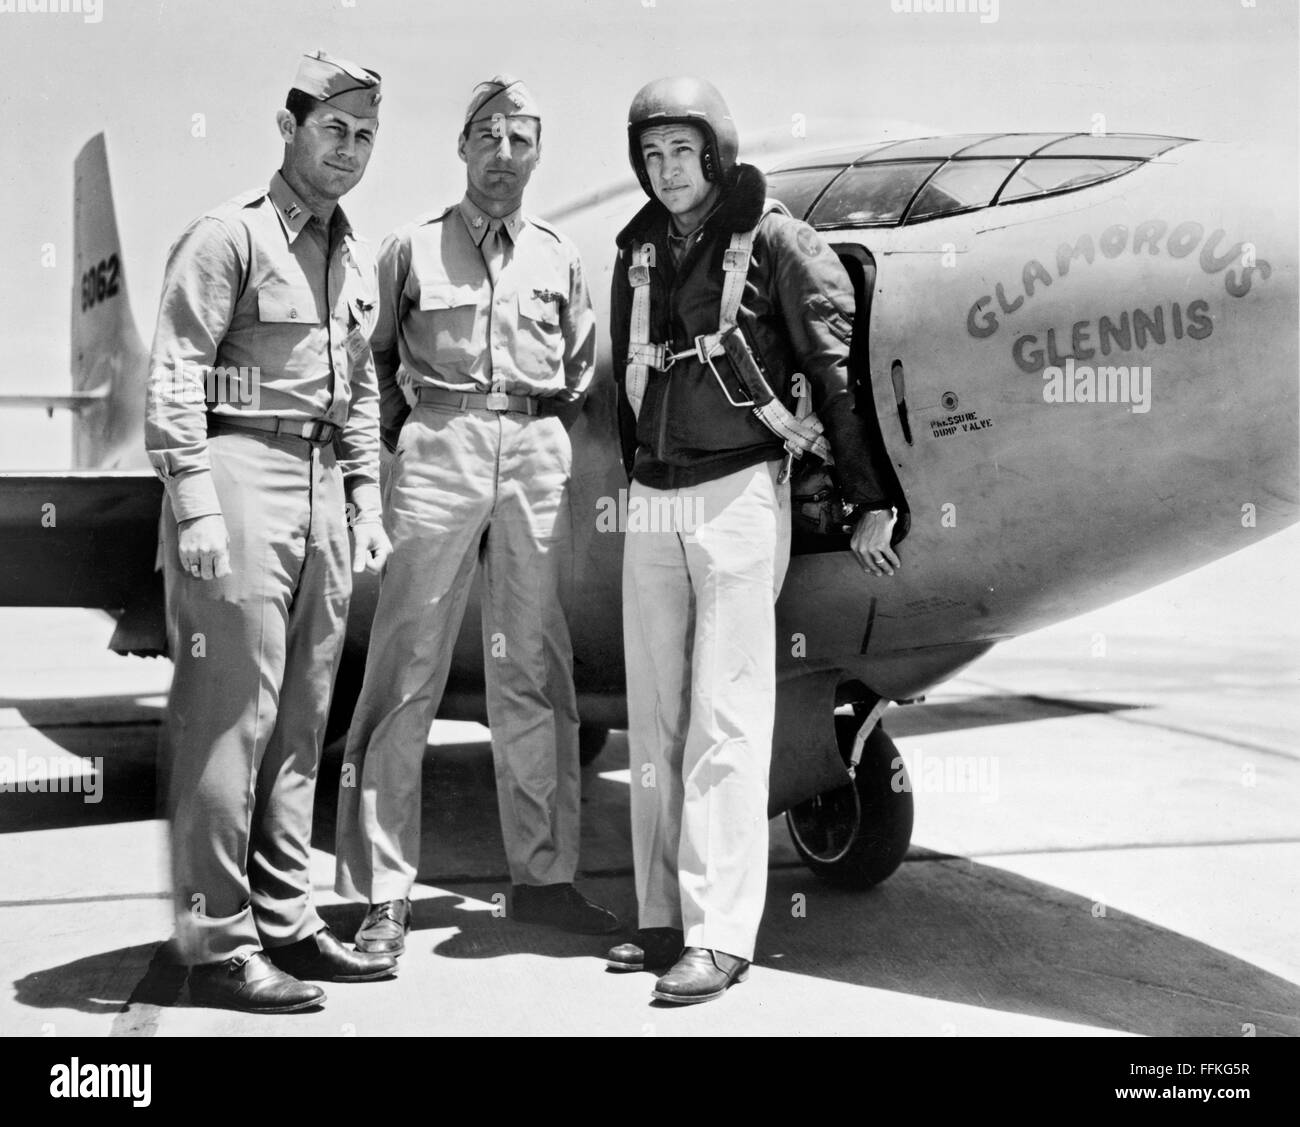 Glamorous Glennis. La Bell X-1 'Glamorous Glennis' con, da sinistra a destra, il capitano Chuck Yeager, grande Gus Lundquist e il Capitano James Fitzgerald. Foto c.1947-1948 Foto Stock